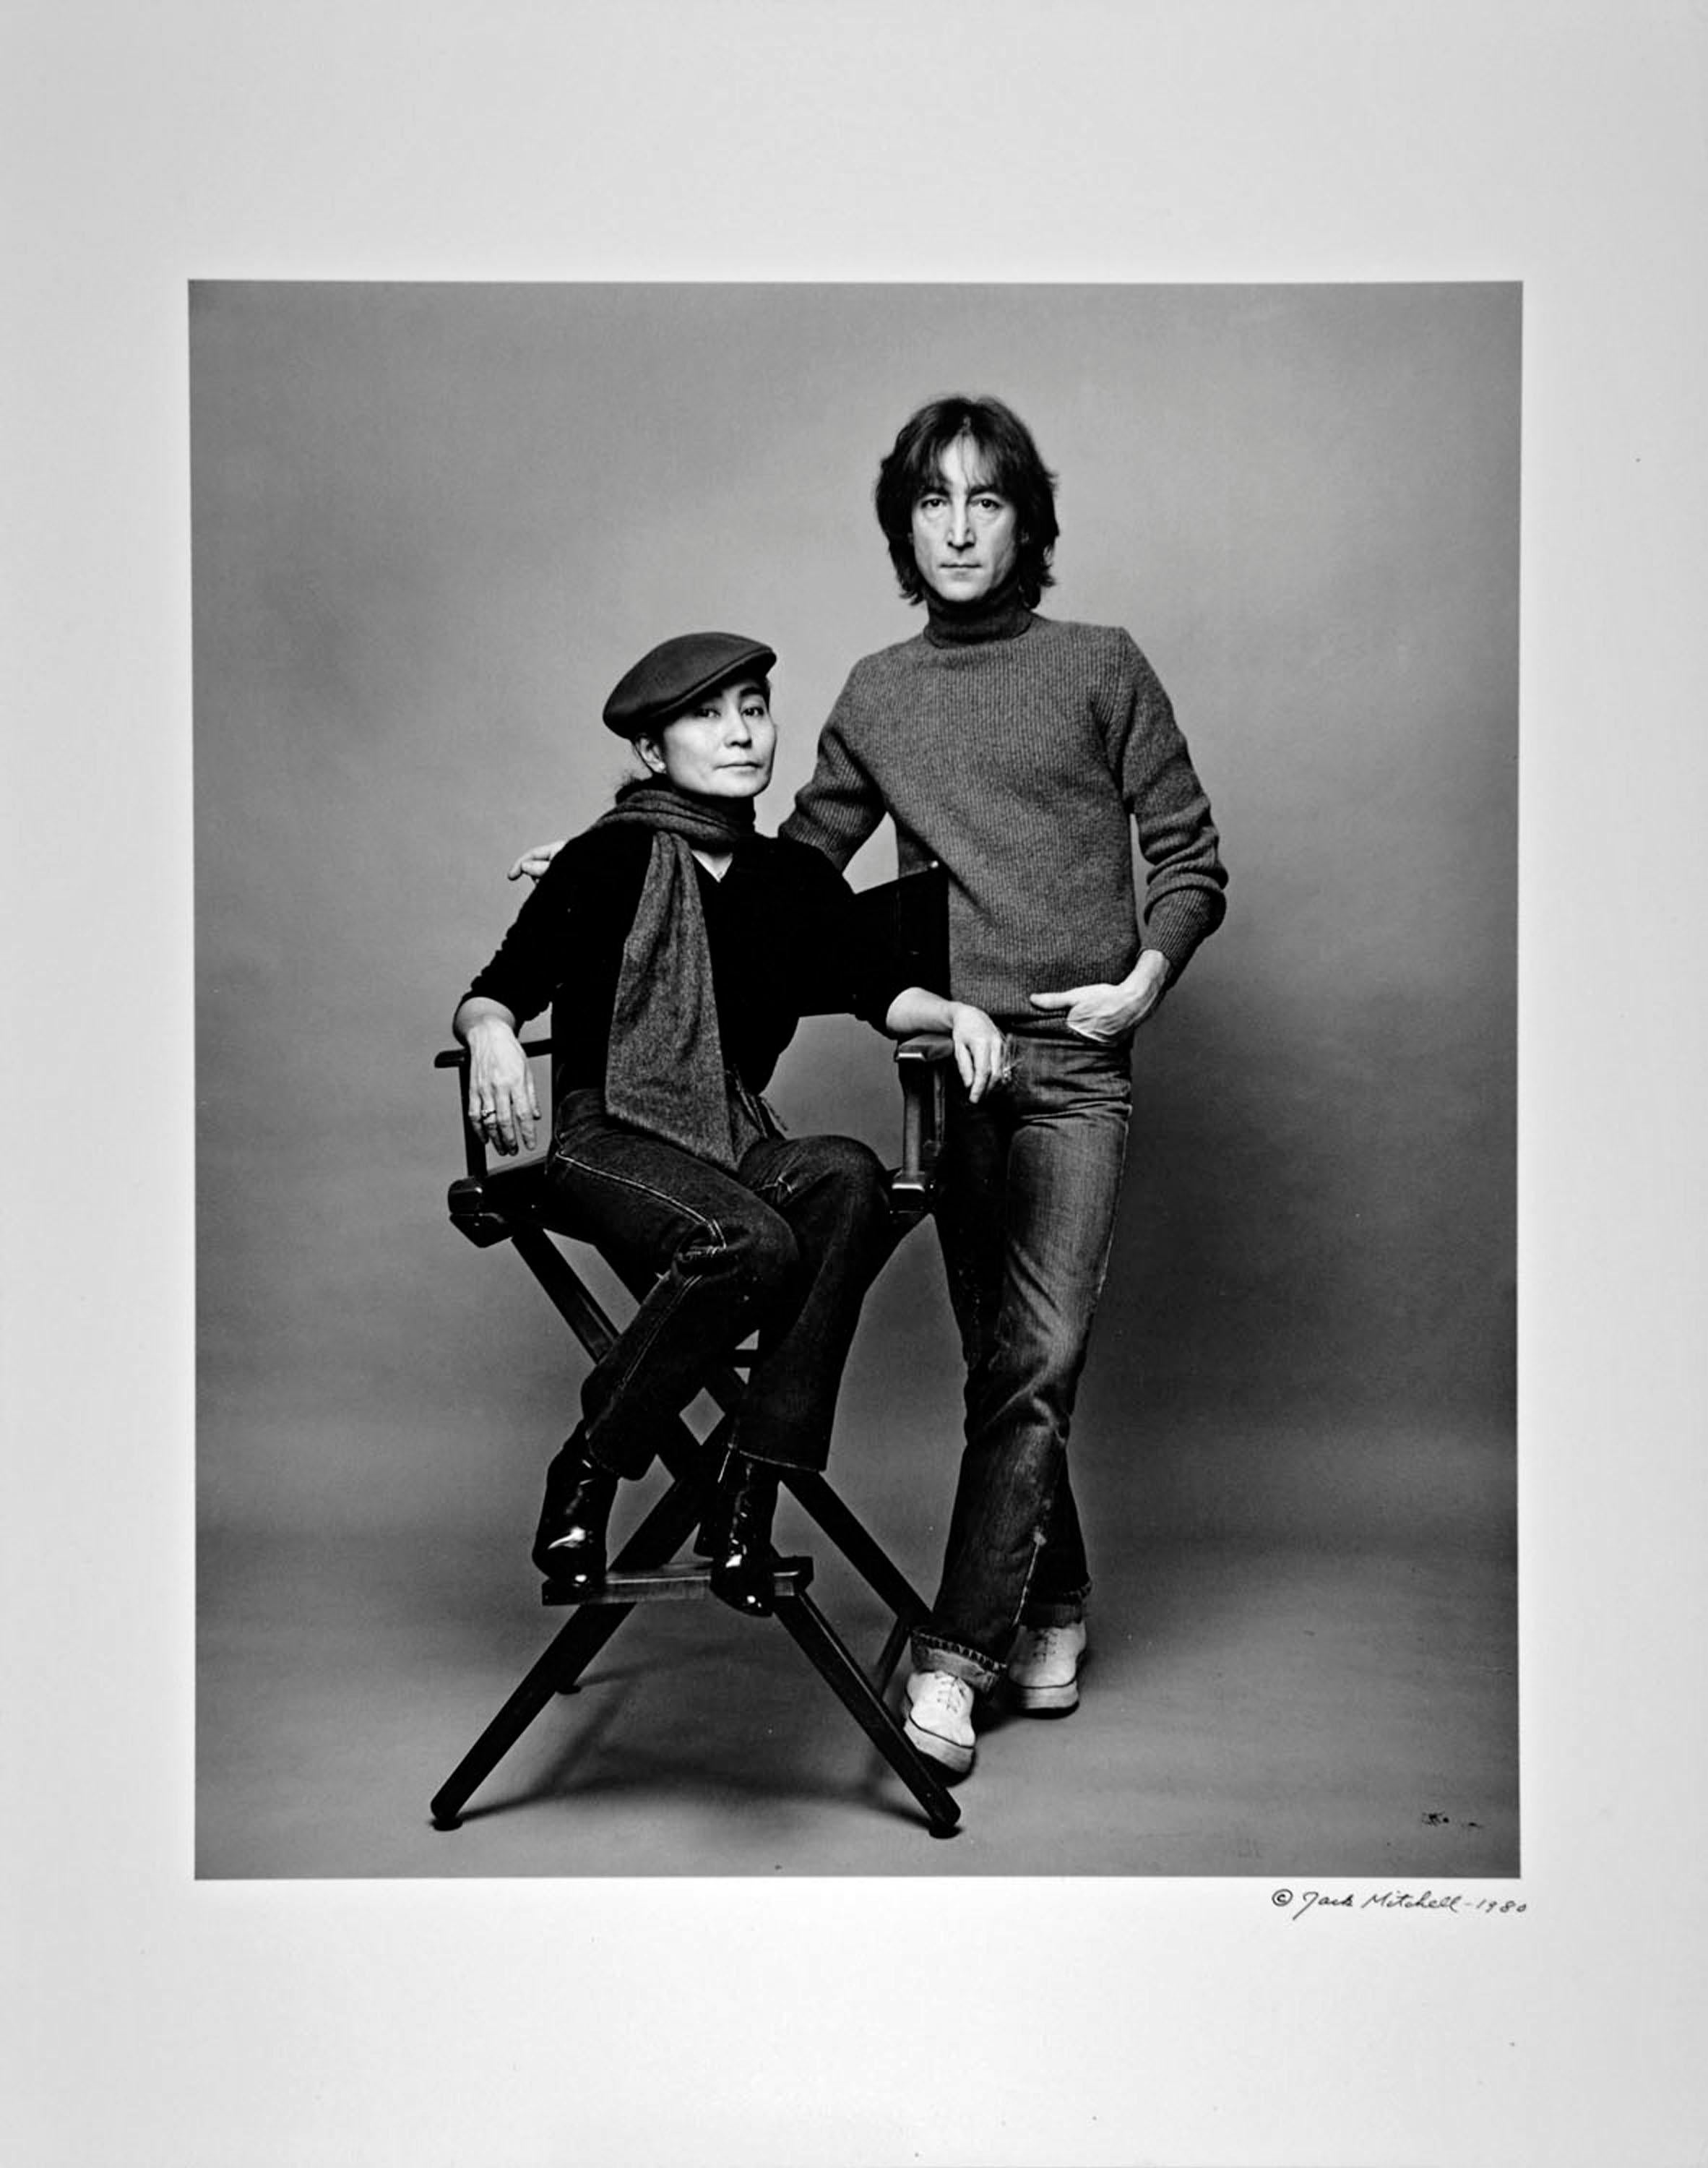 photographie vintage à la gélatine d'argent de 11 x 14 pouces de John Lennon et Yoko Ono, photographiée le 2 novembre 1980, la dernière séance photo complète de la vie de Lennon. Signé par Jack Mitchell au verso de l'épreuve.   Vient directement des